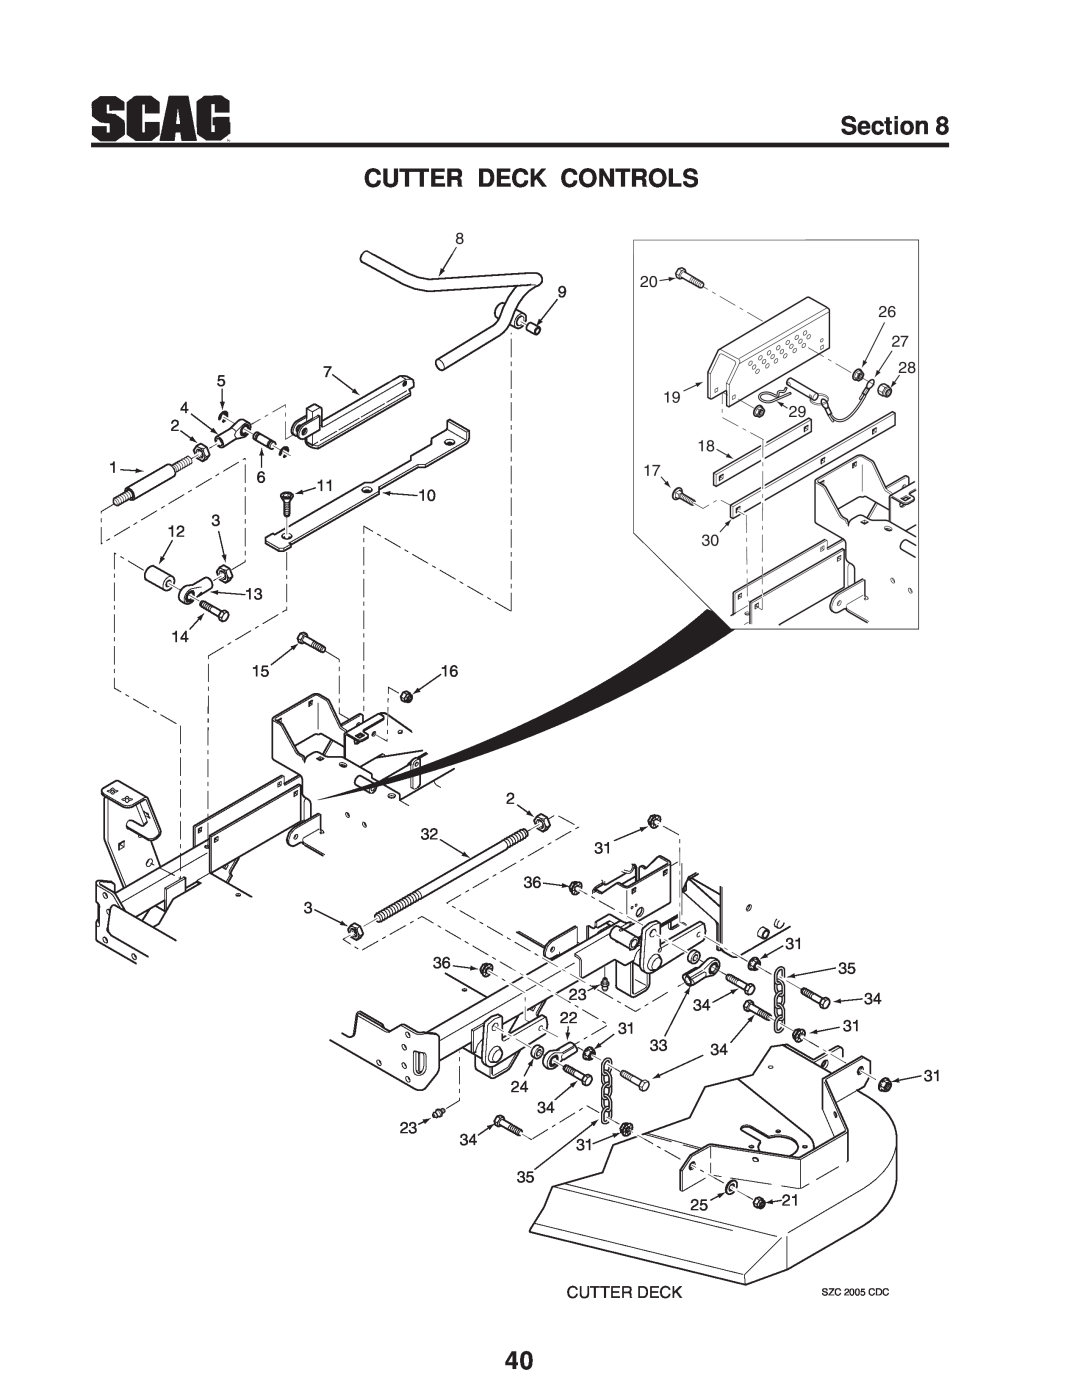 Scag Power Equipment manual Section CUTTER DECK CONTROLS, Cutter Deck, SZC 2005 CDC 